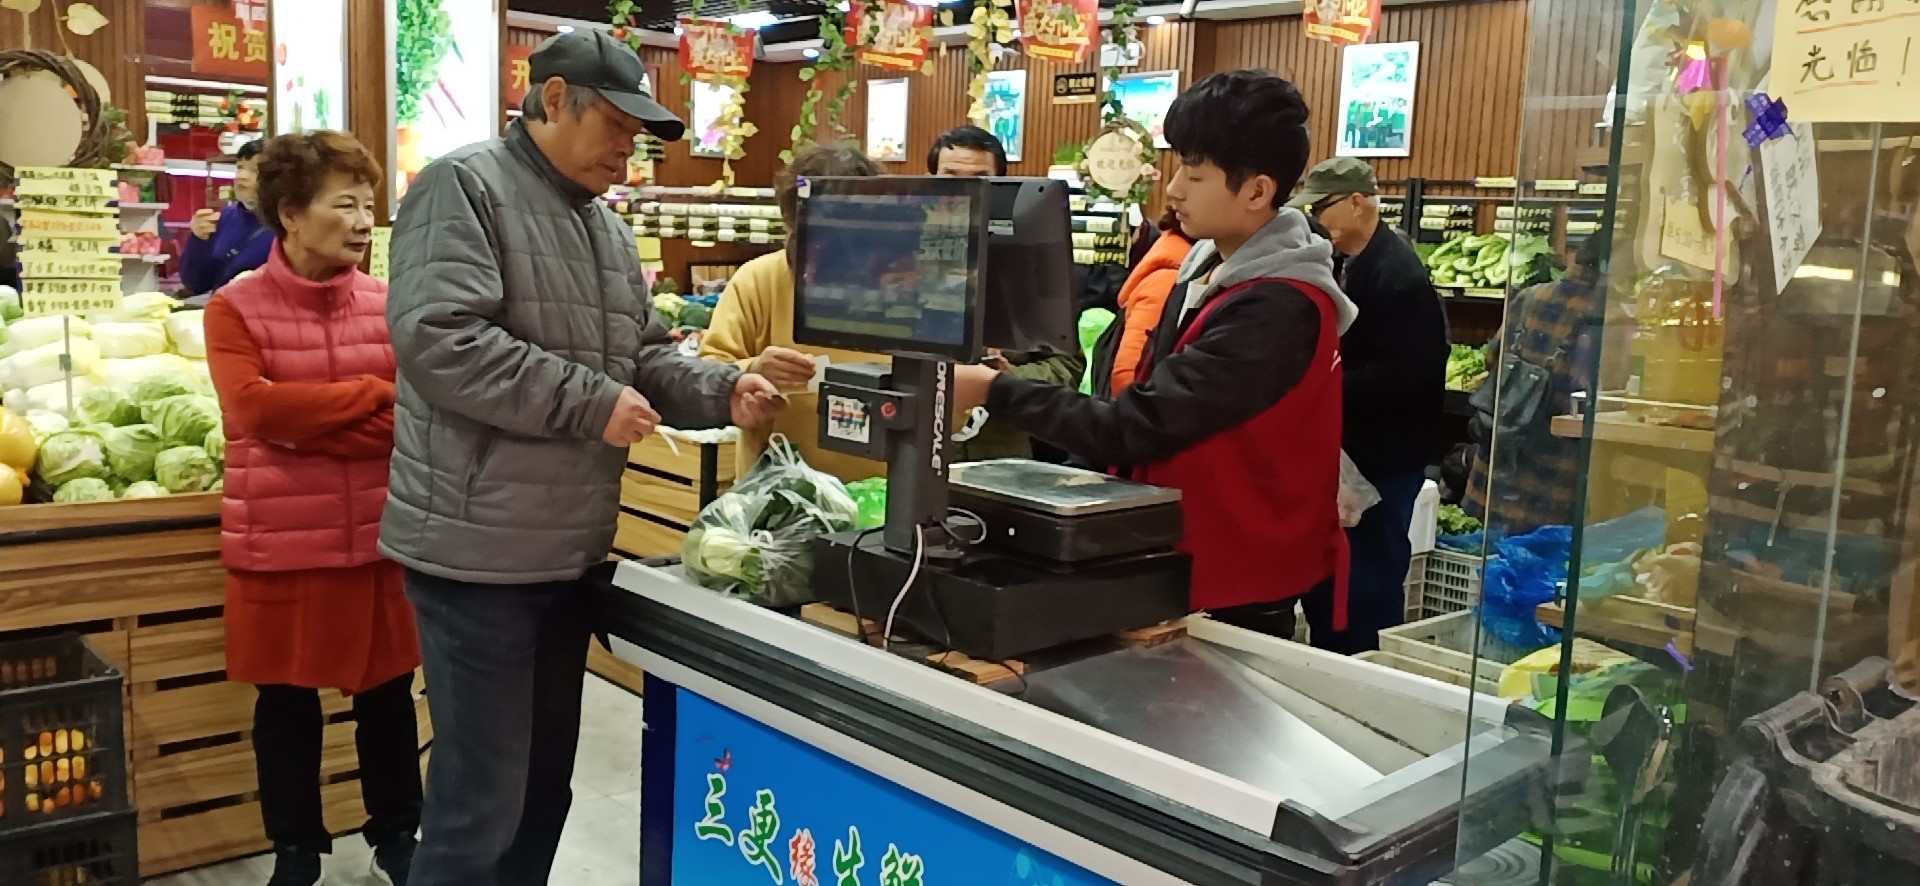 上海惠民工程三更生鲜连锁超市